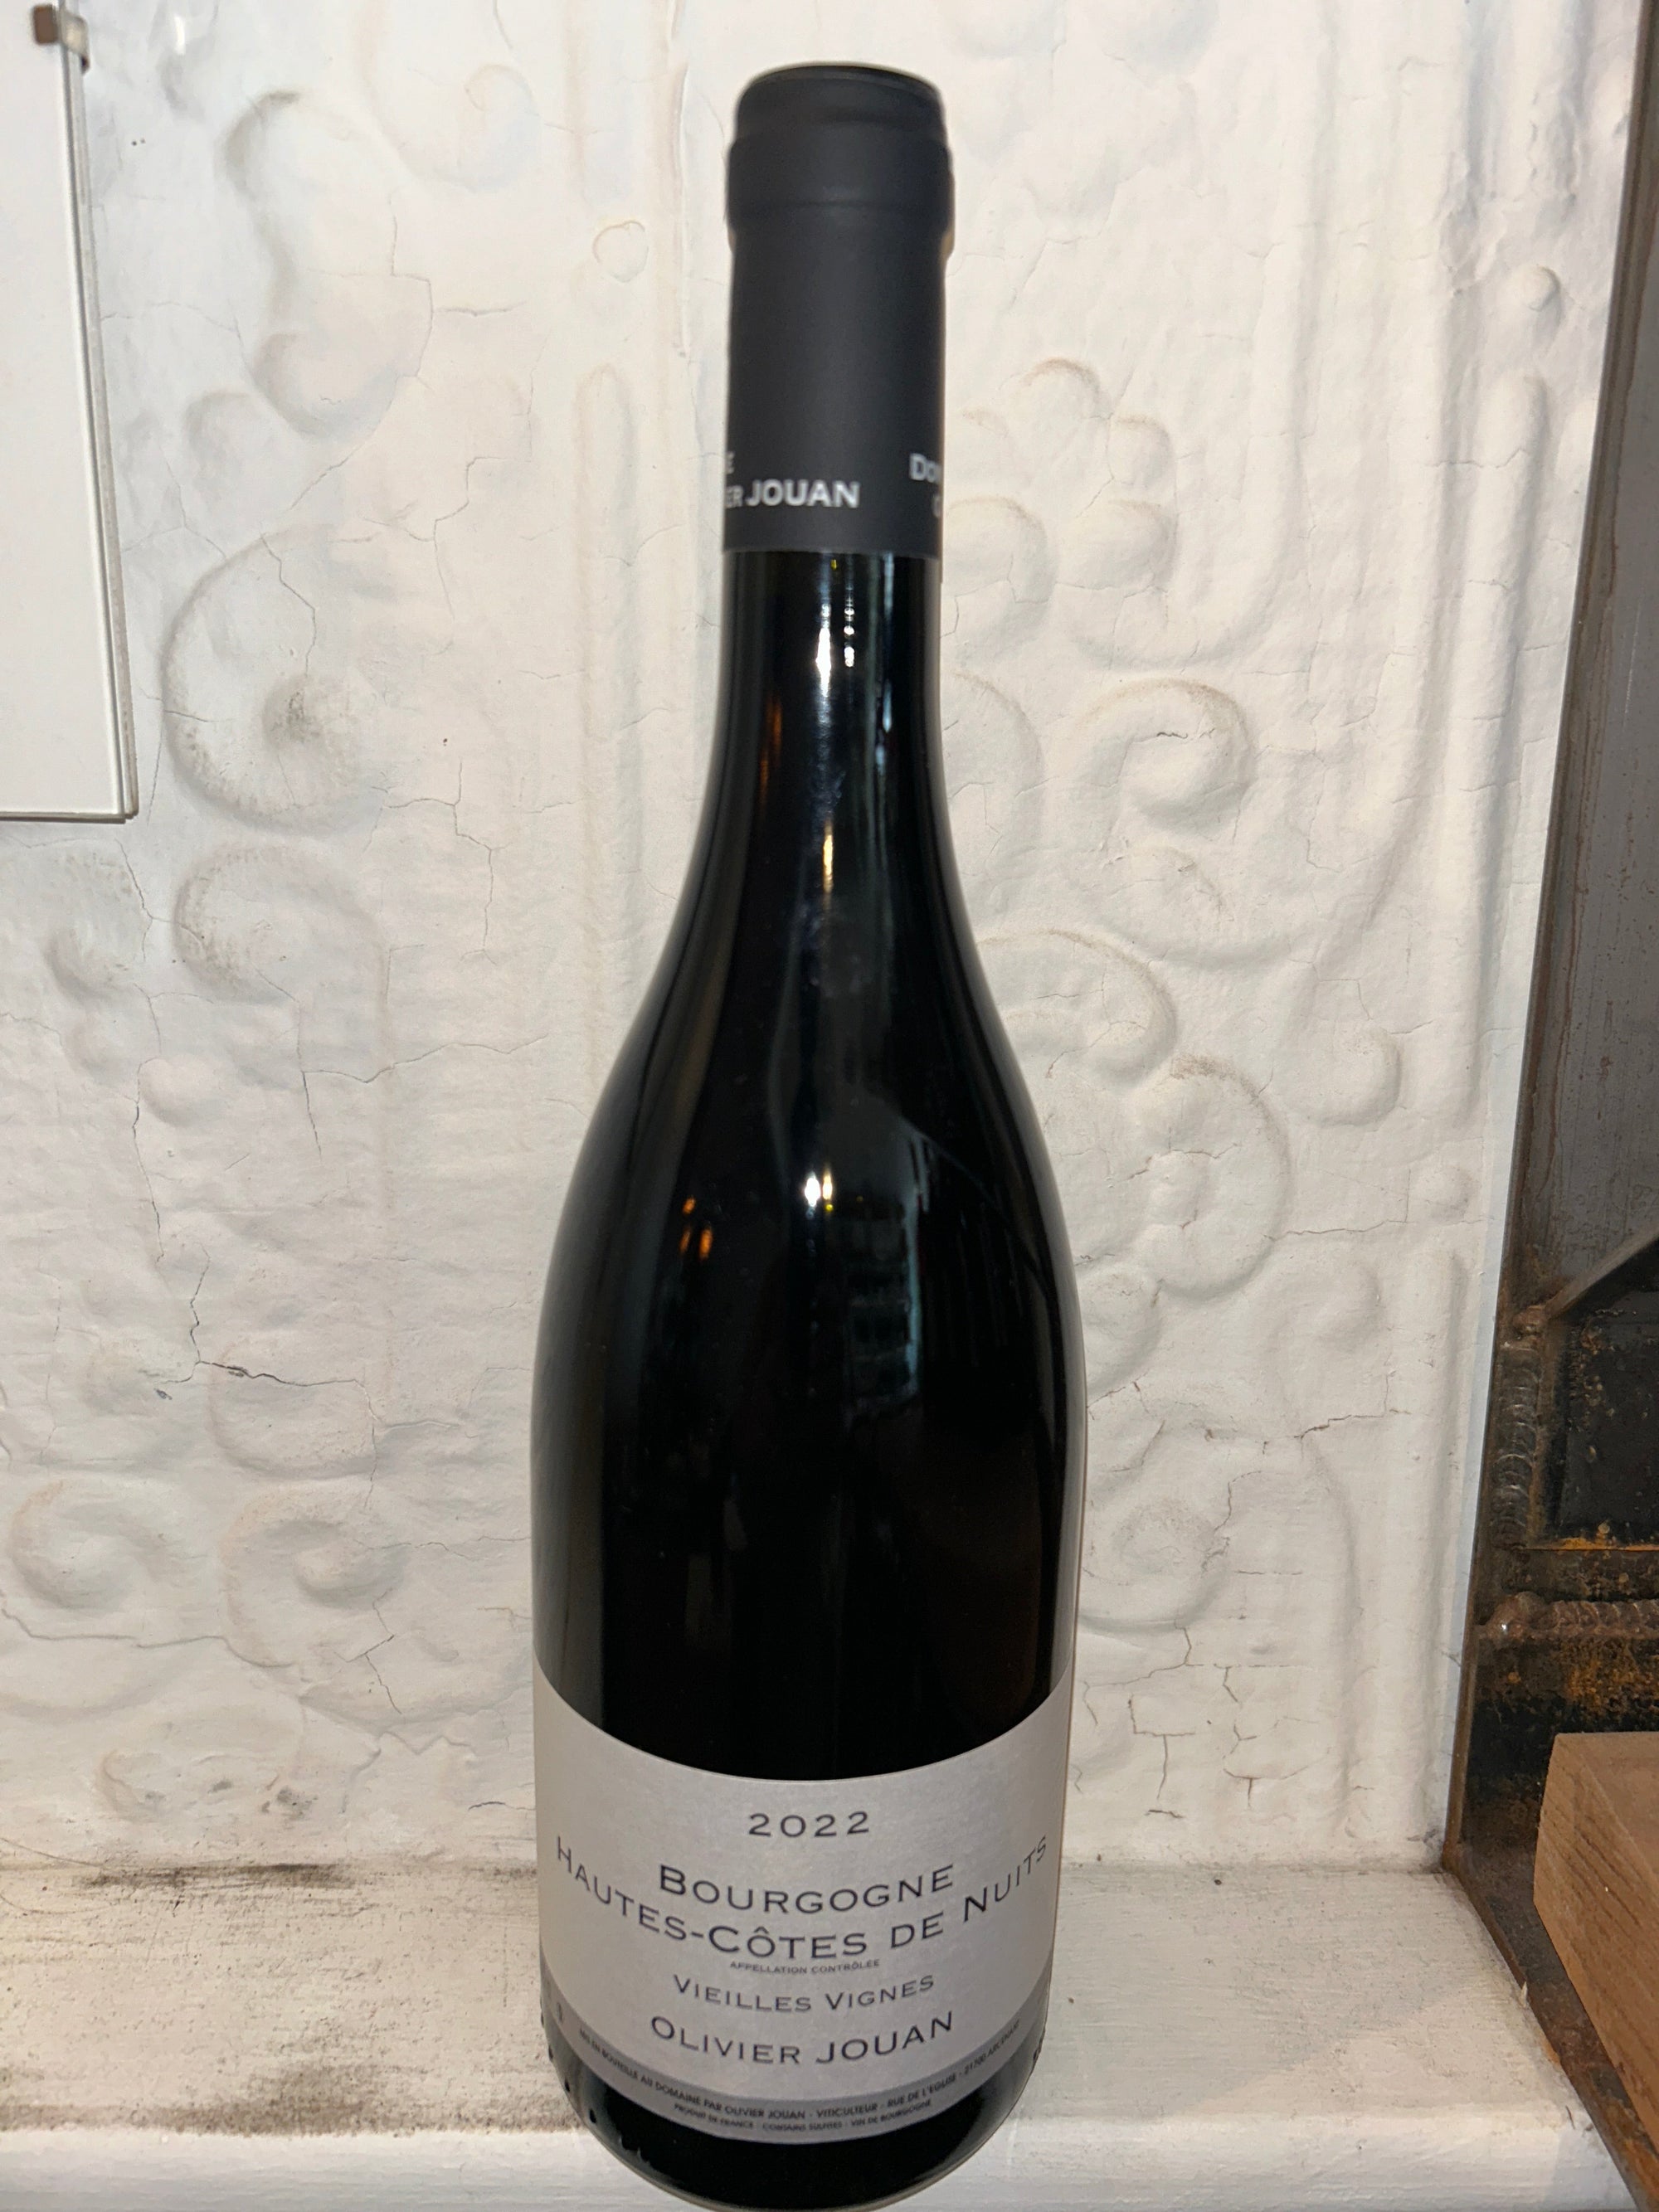 Hautes Cotes de Nuits, Olivier Jouan 2022 (Burgundy, France)-Wine-Bibber & Bell